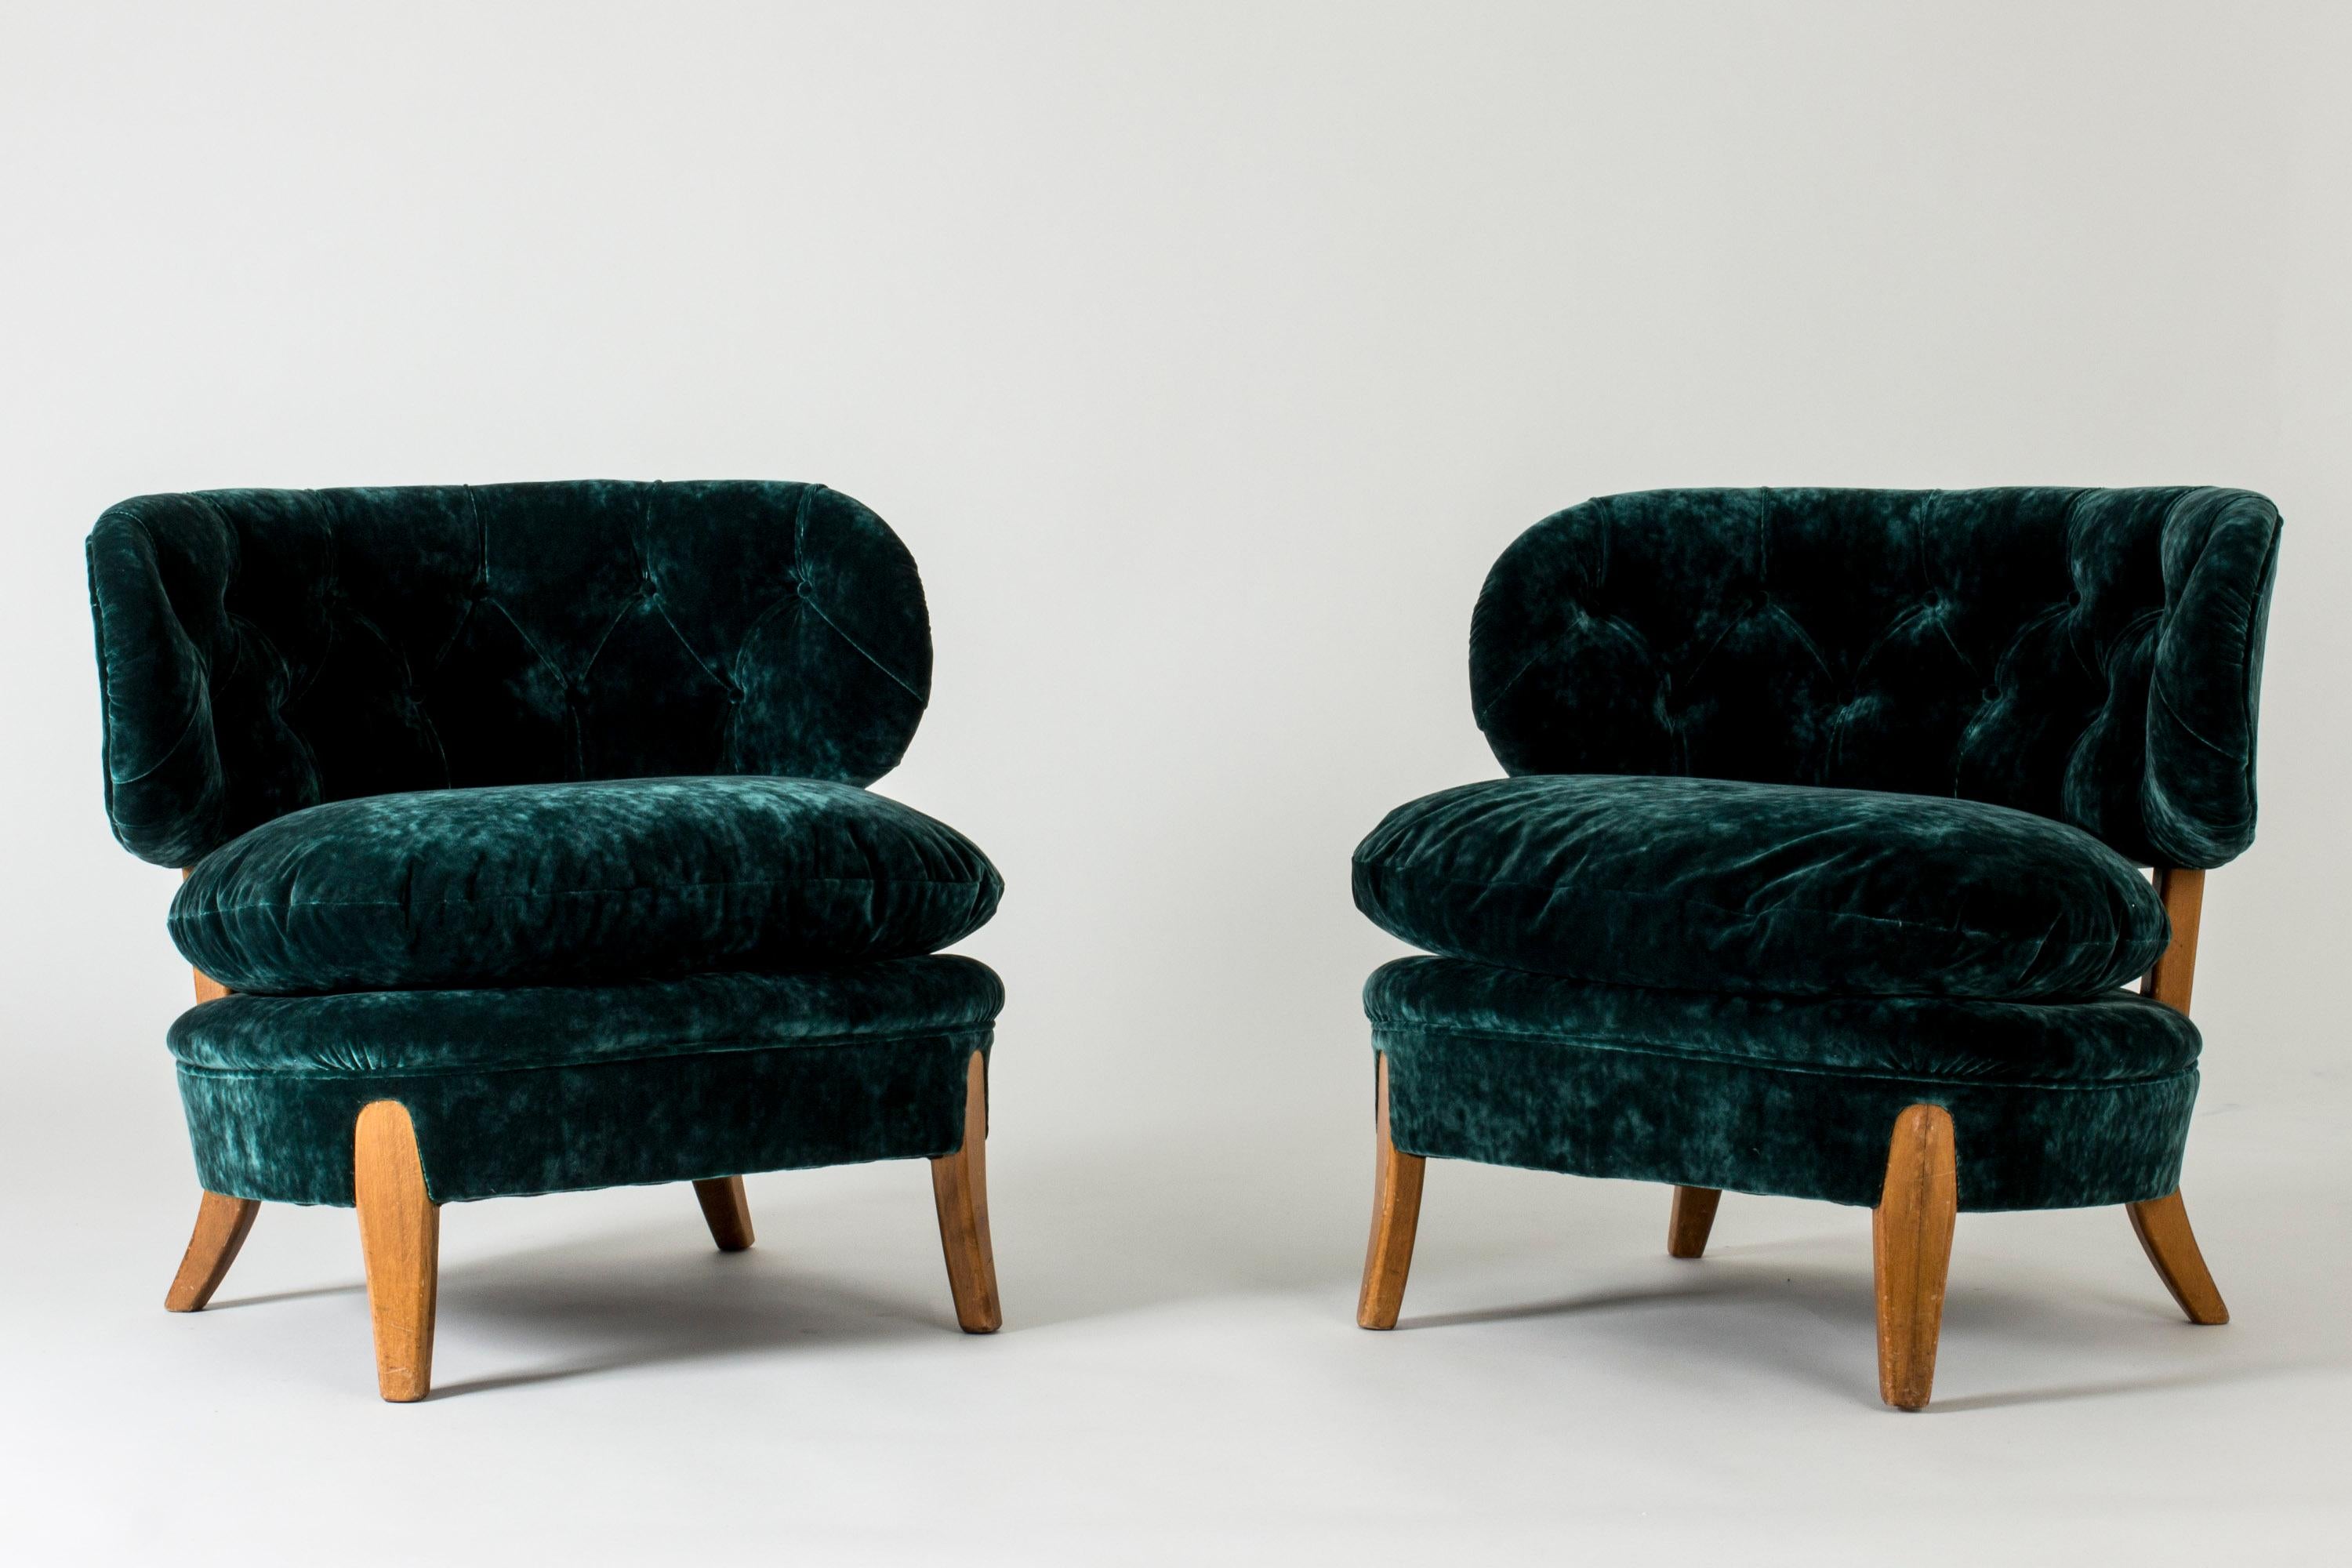 Paire de magnifiques chaises longues par Otto Schulz, tapissées d'un luxueux velours vert foncé. Coussins lâches. Un design généreux et élégant, un grand confort.